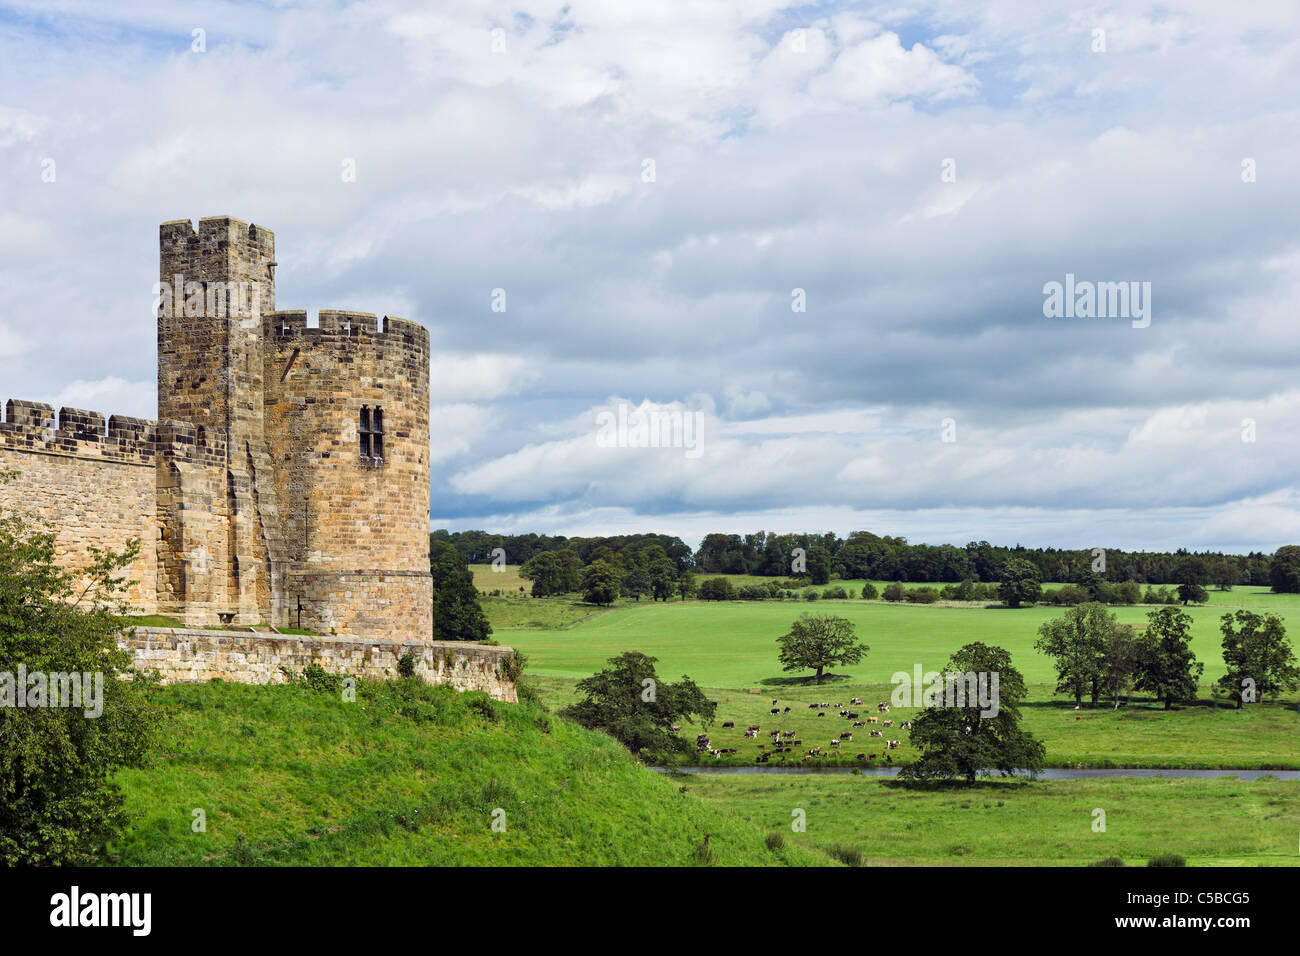 Alnwick Castle (utilizzato come location per la scuola di Hogwarts in Harry Potter films), Alnwick, Northumberland, North East England, Regno Unito Foto Stock